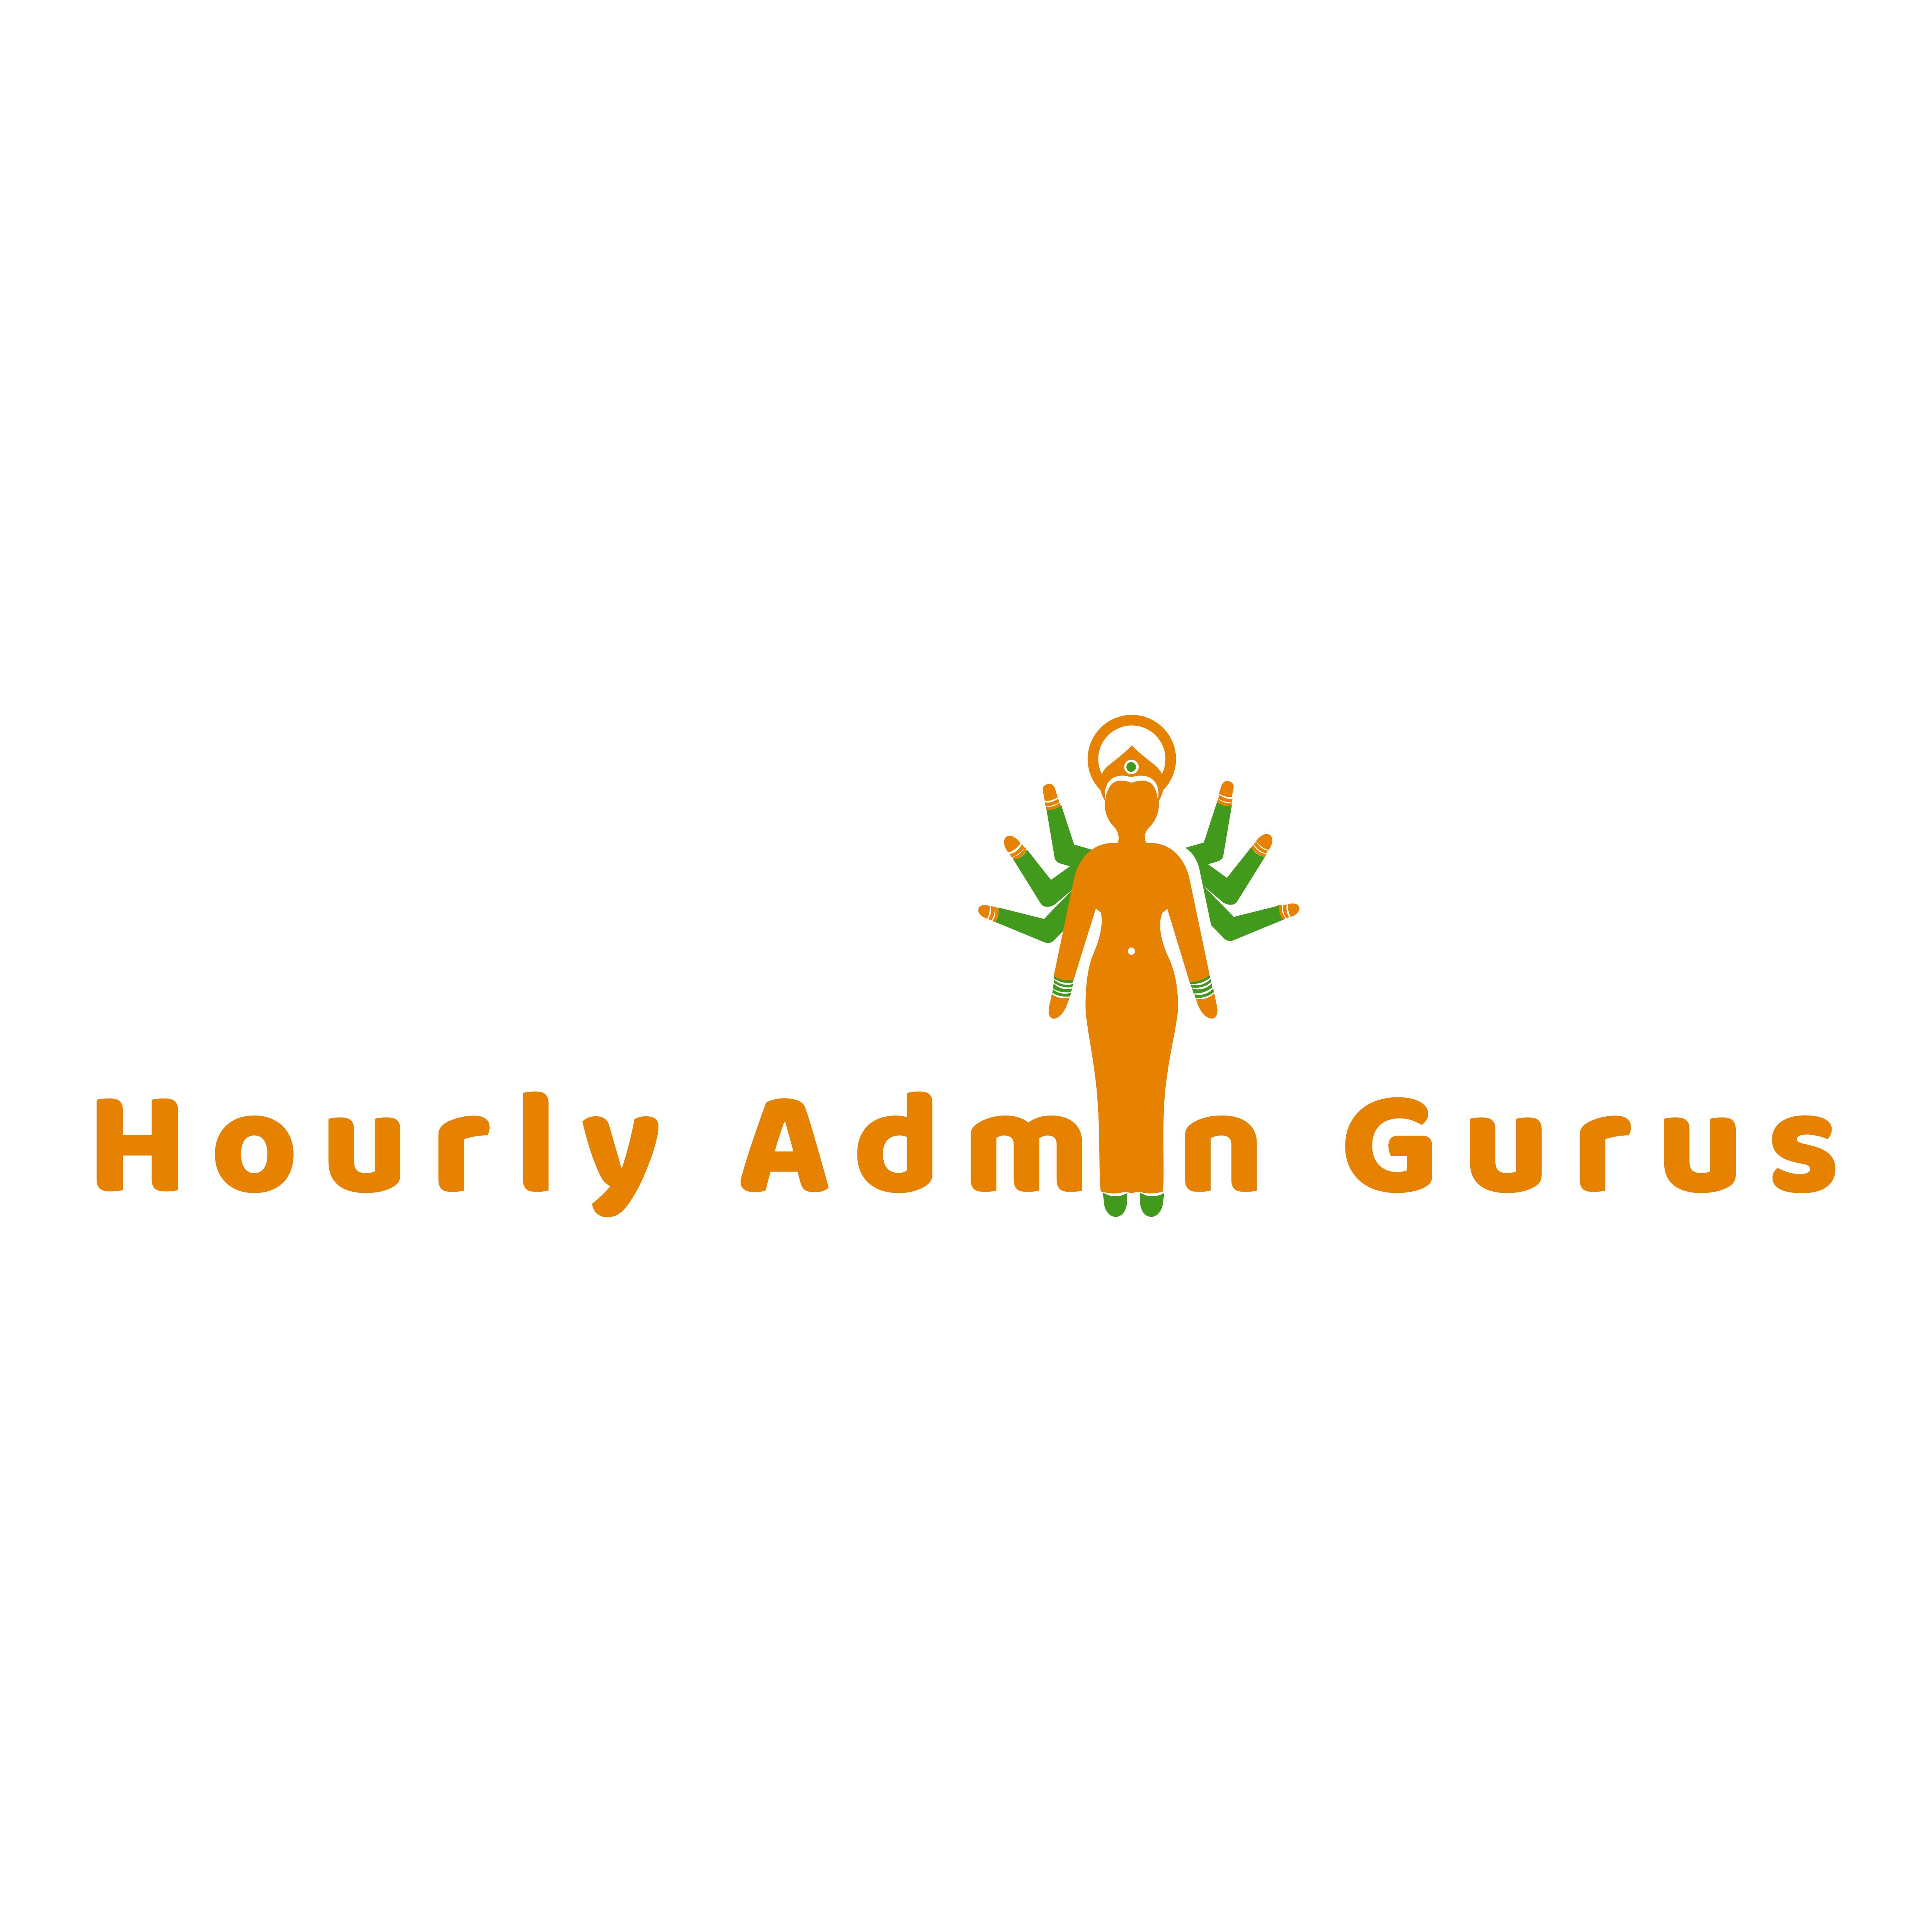 Hourly Admin Gurus Logo